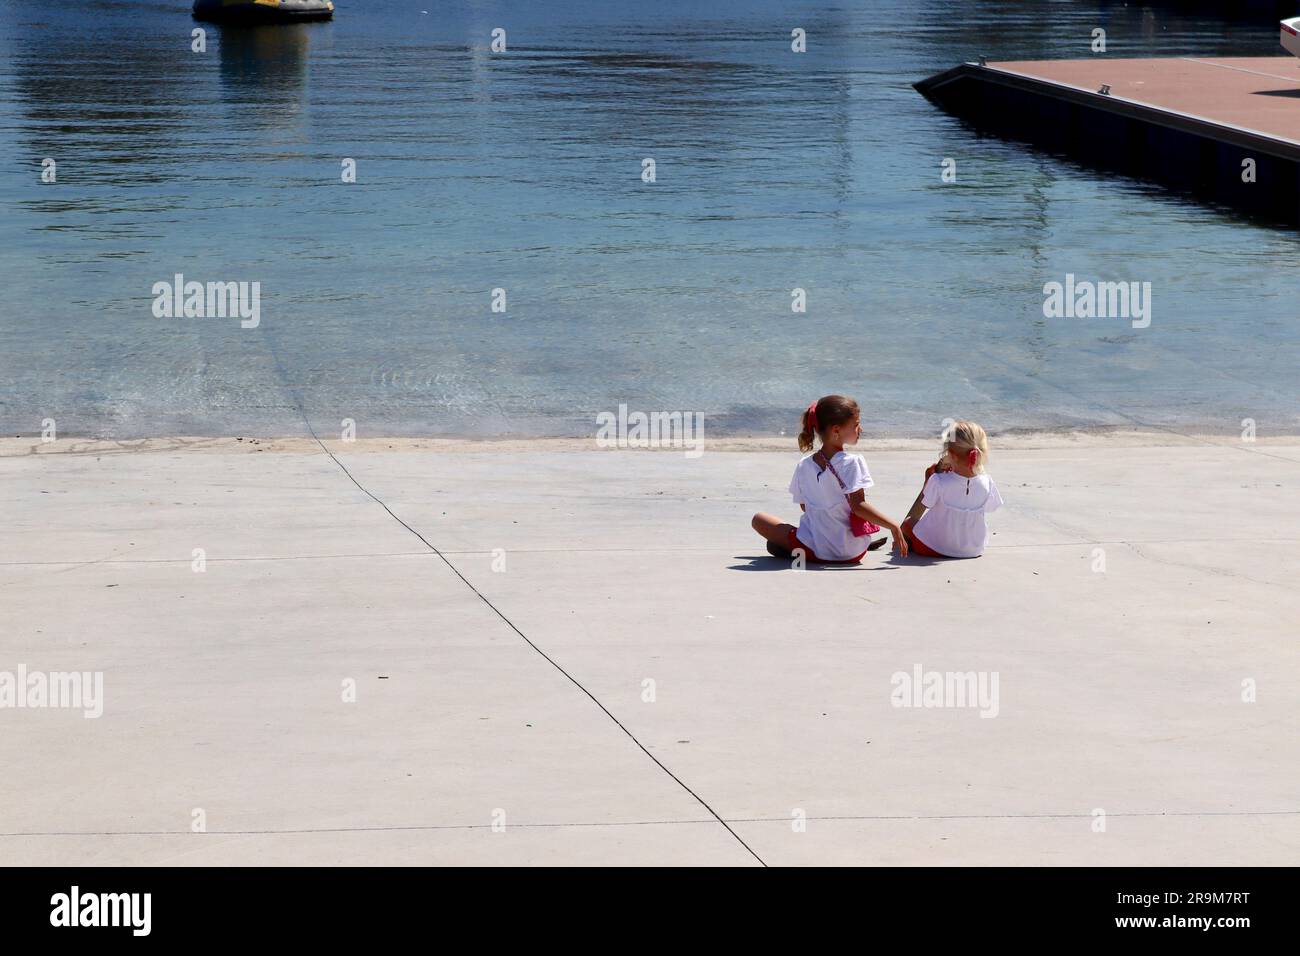 Deux jeunes sœurs vêtues de leur dimanche le mieux, profitez de la tranquillité de la mer depuis la rampe de lancement de Real Club Nautico Marina, Vigo, Espagne. Banque D'Images